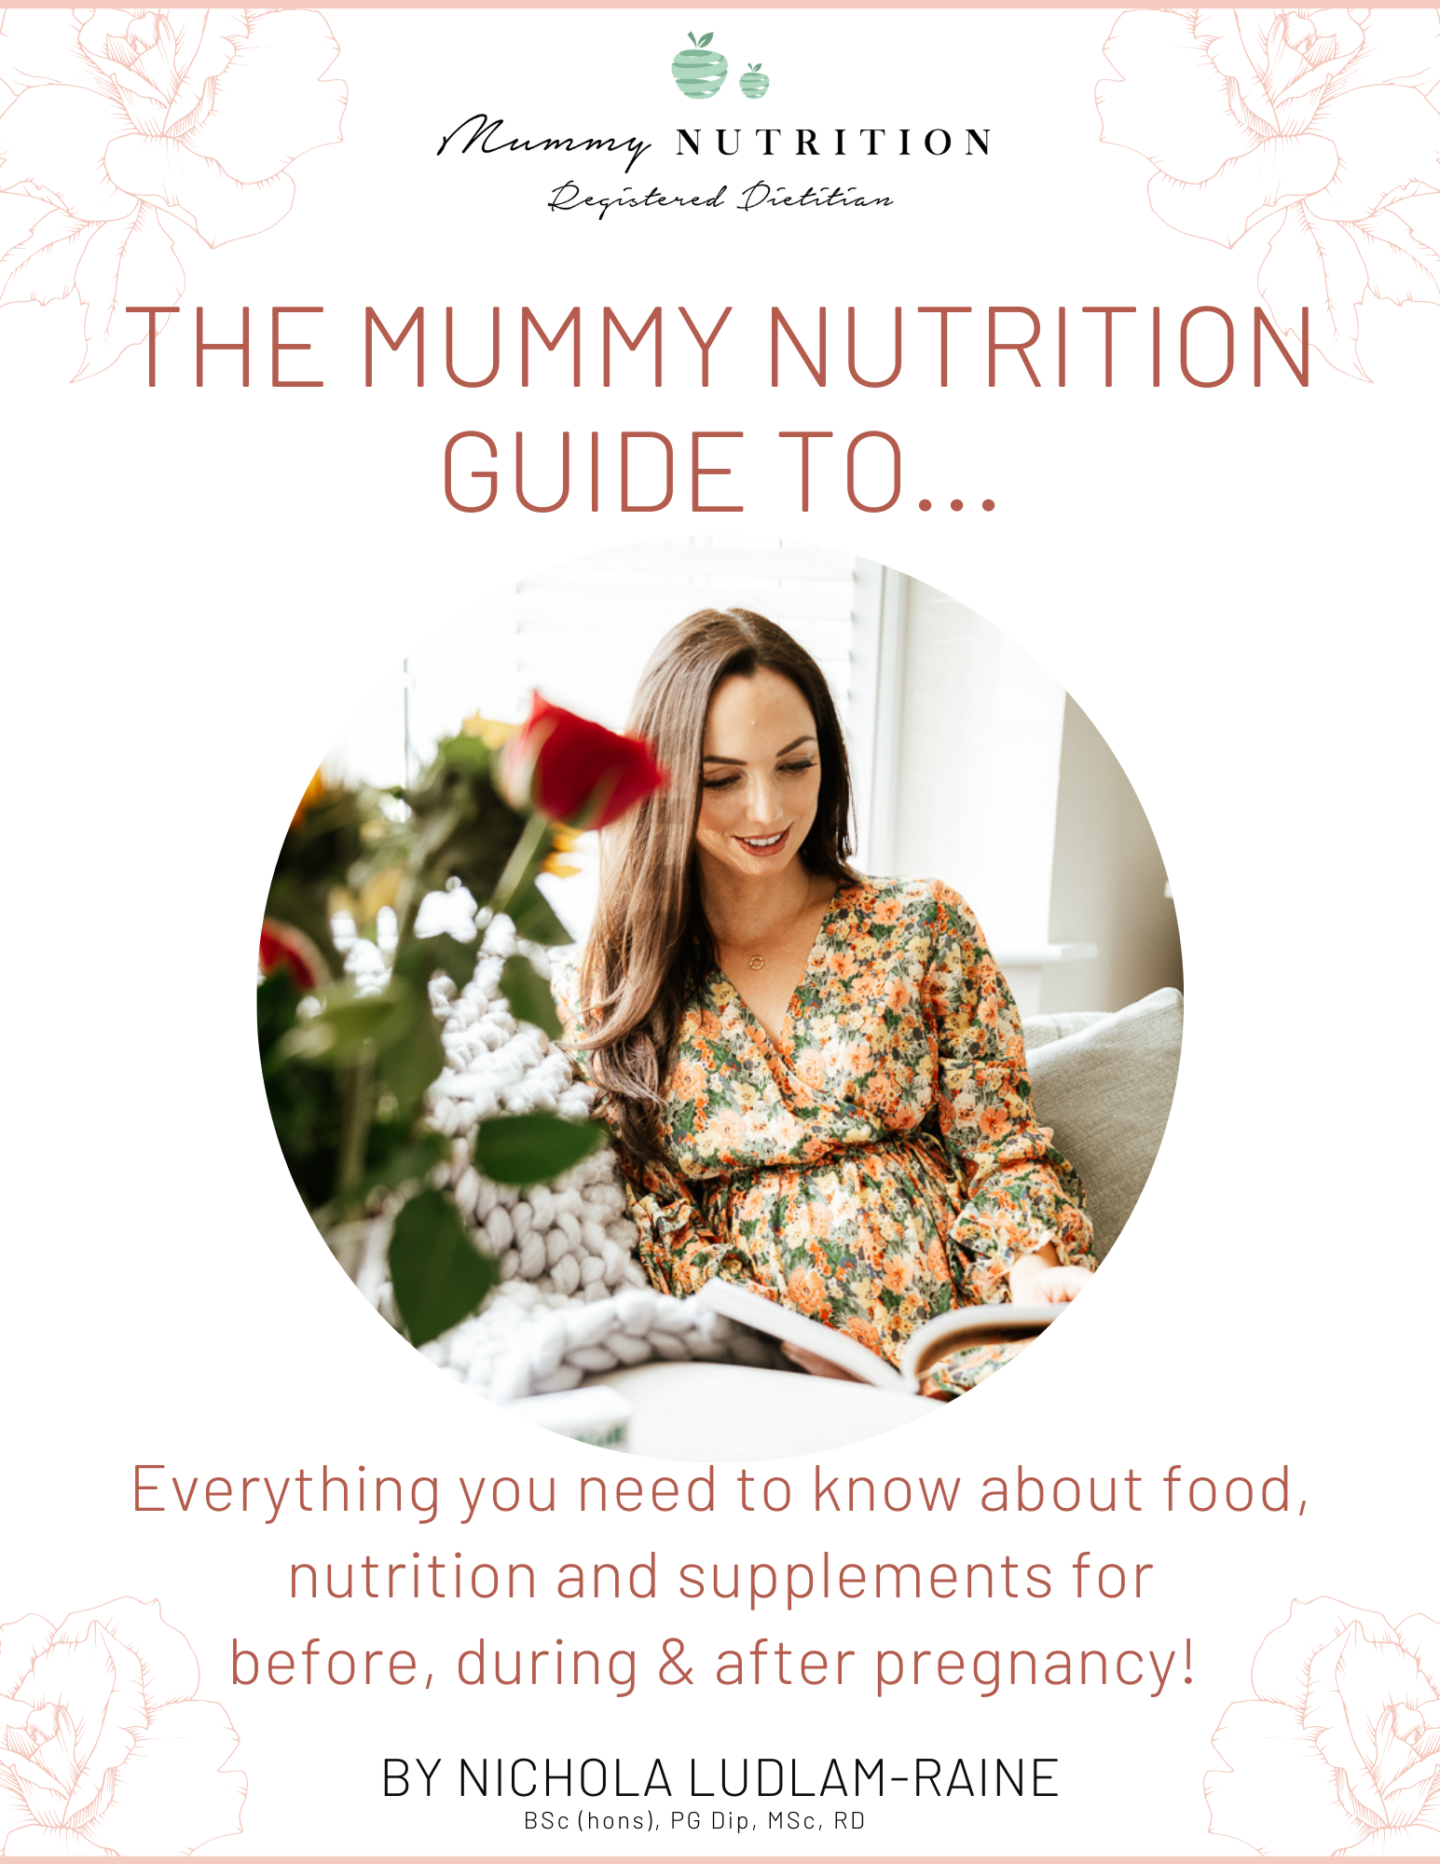 My Mummy Nutrition eBook!